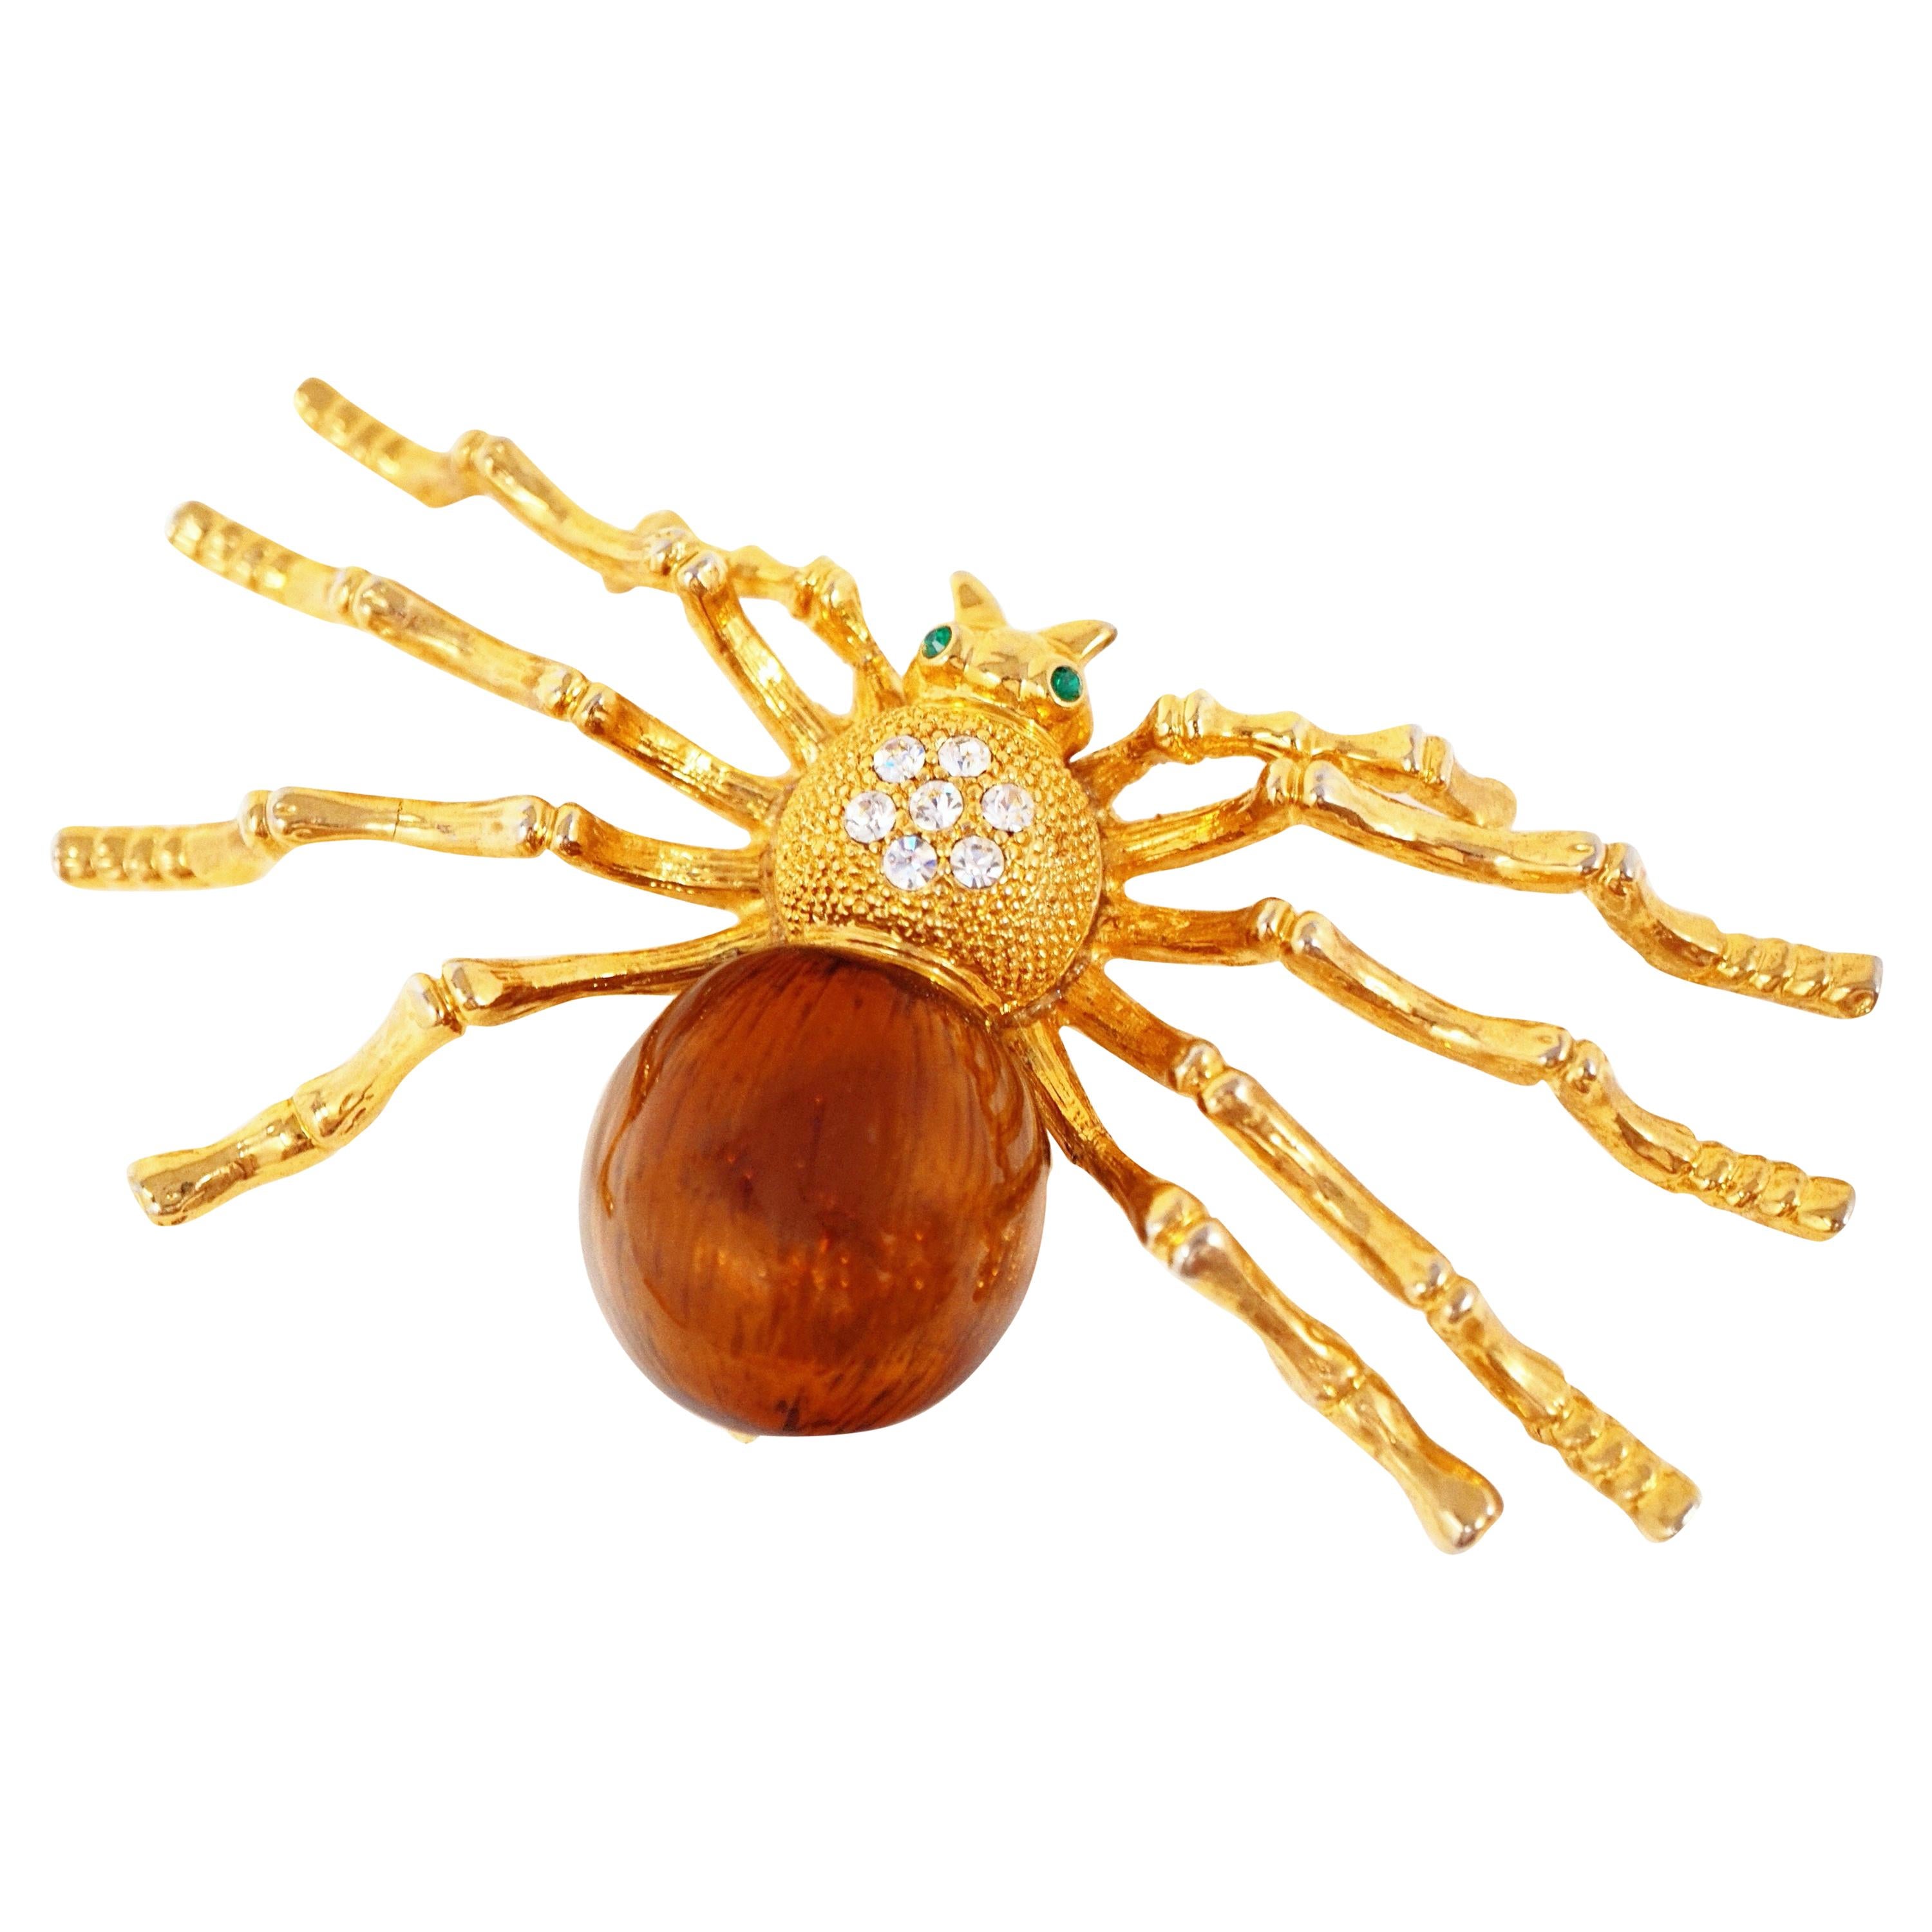 Broche fantaisie surdimensionnée en forme d'araignée, dorée et émaillée, avec strass, années 1980